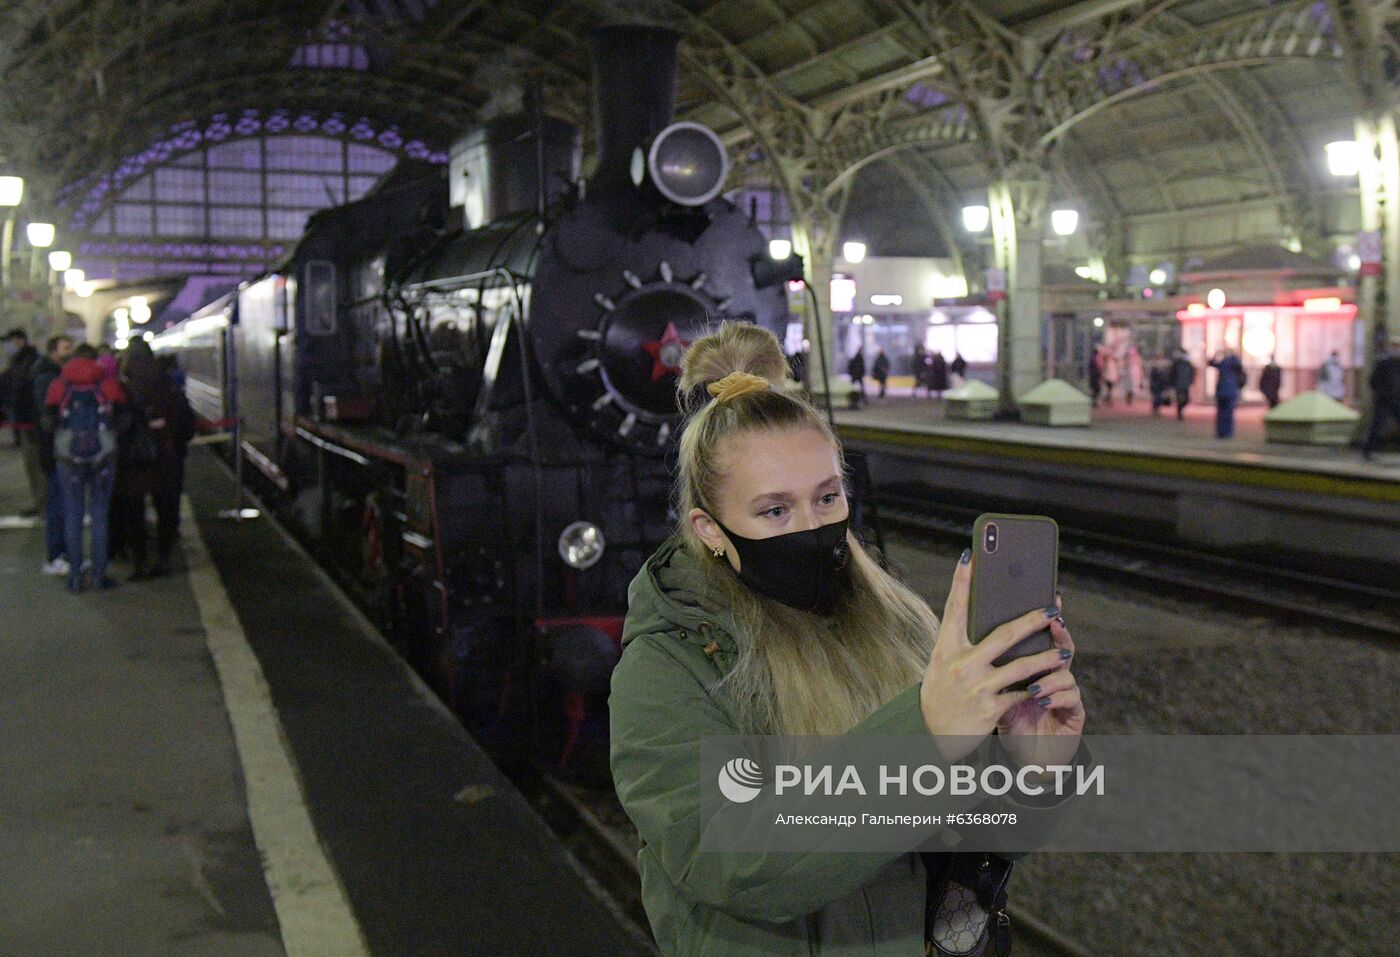 Передвижной музей "Поезд Победы" в Санкт-Петербурге